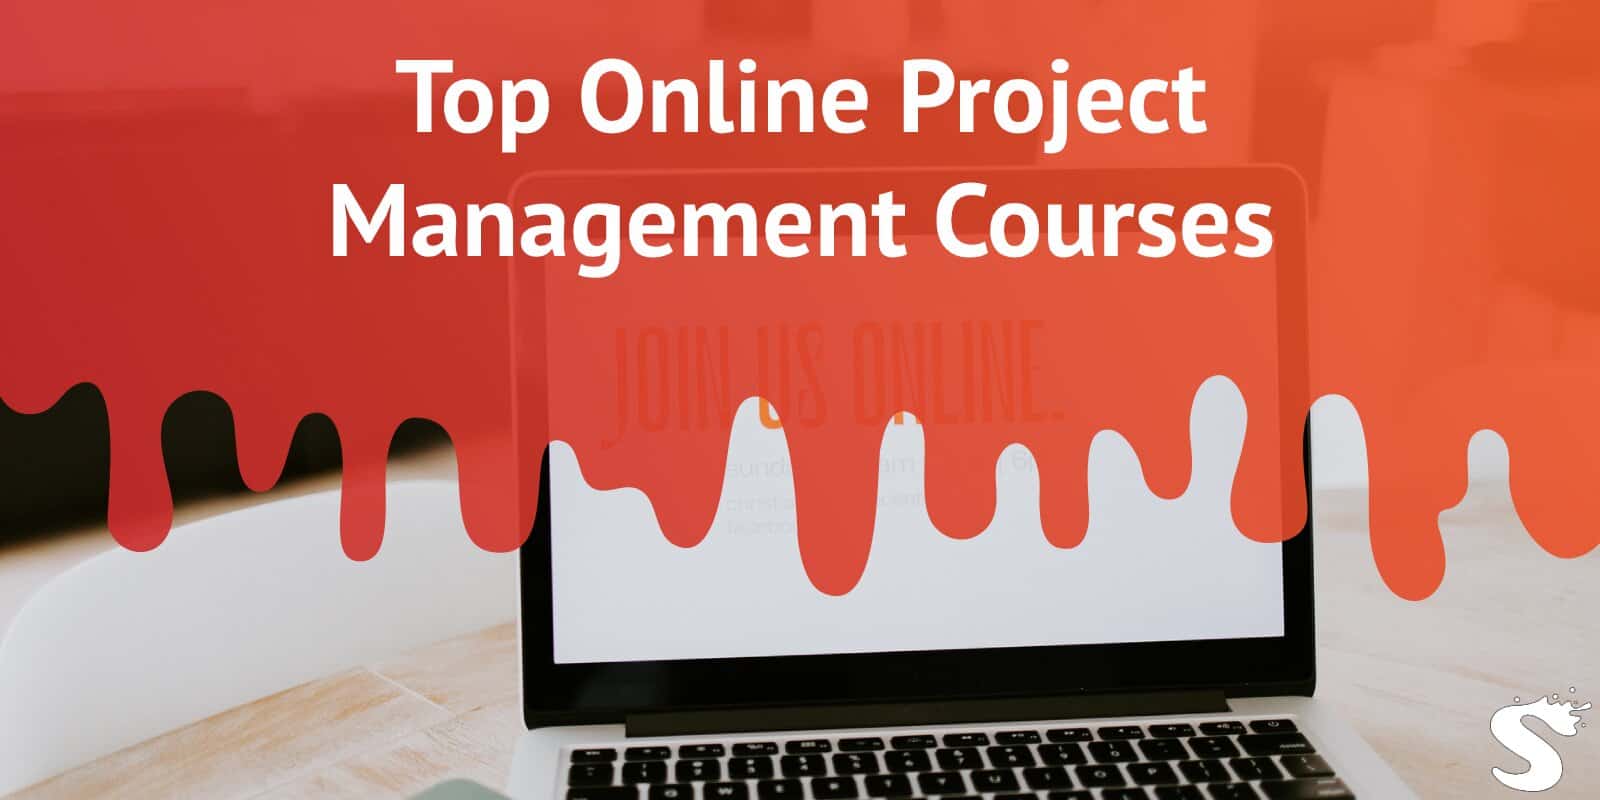 Top Online Project Management Courses